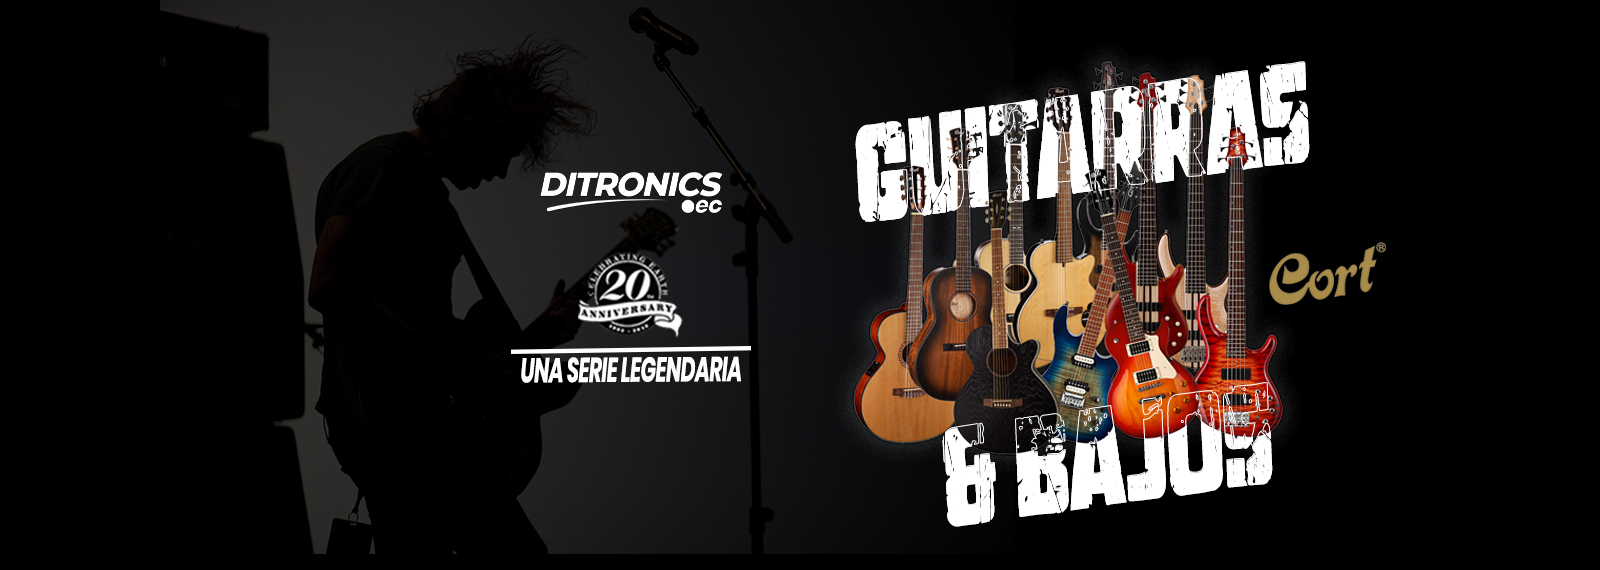 Guitarras y Bajos Marca Cort SLIDER - Ditronics Ecuador